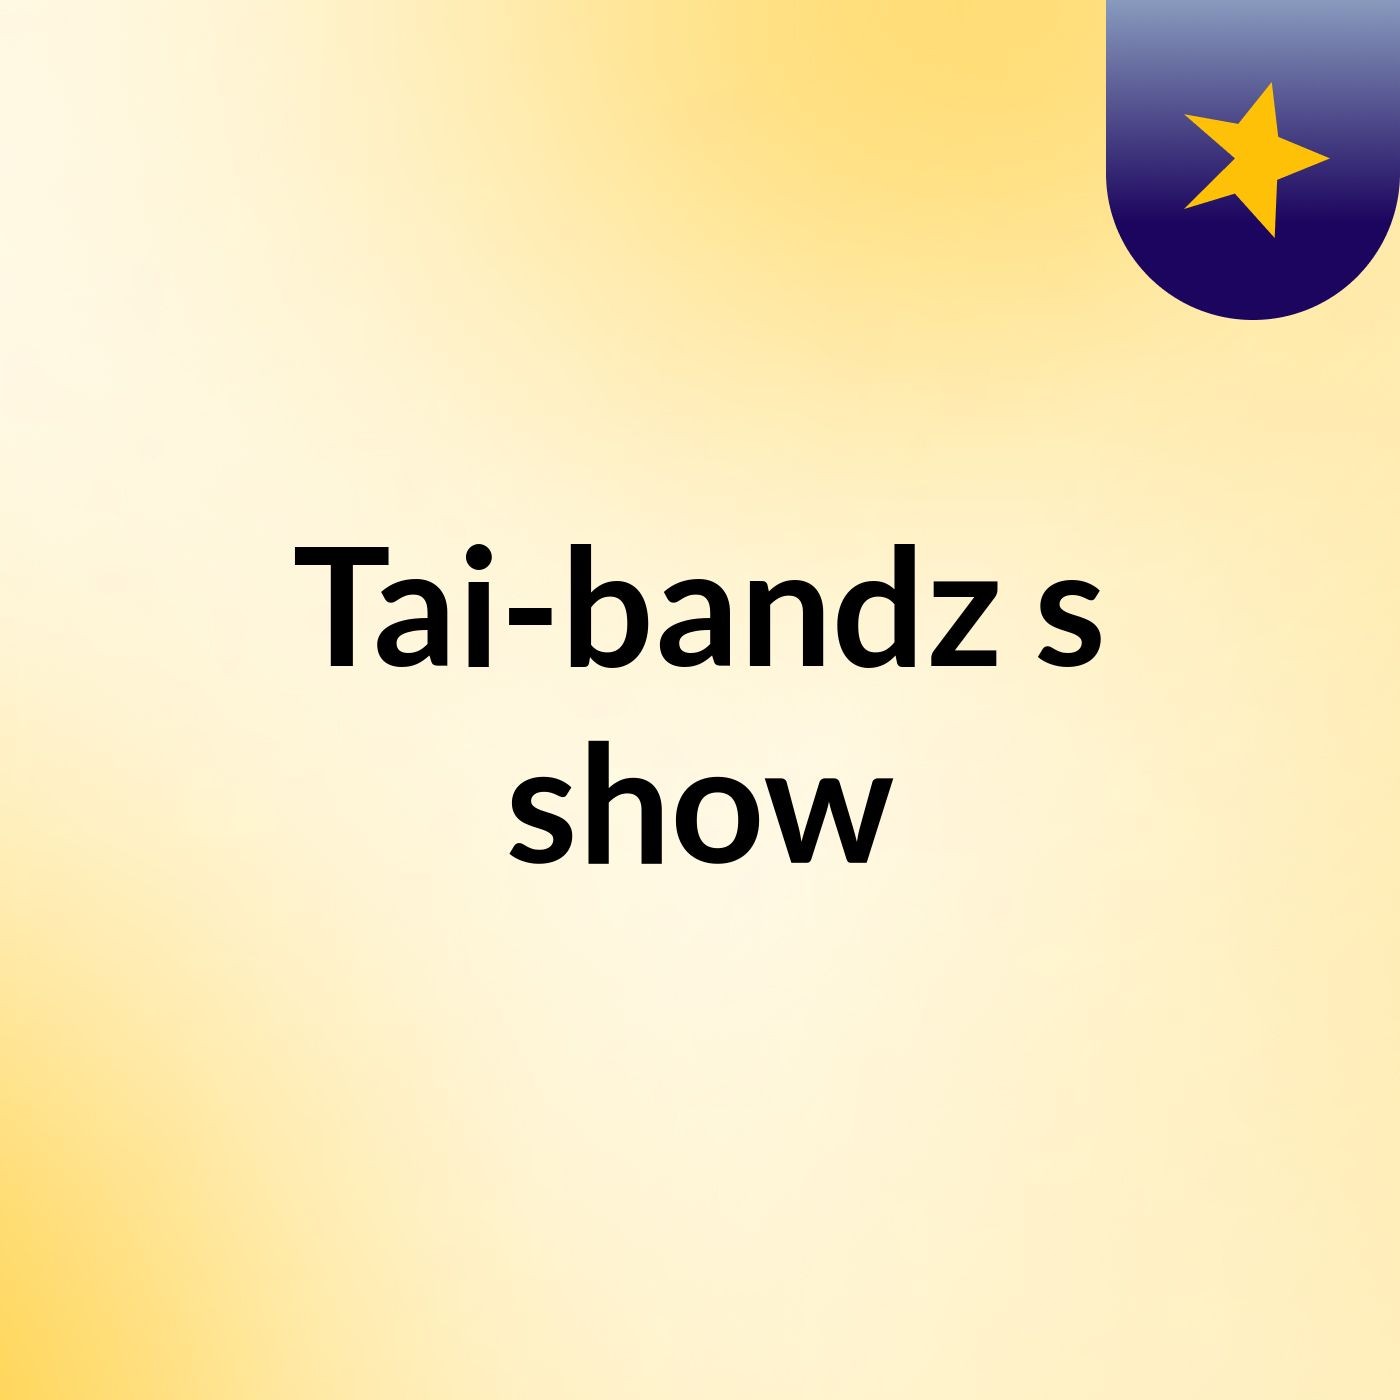 Tai-bandz's show